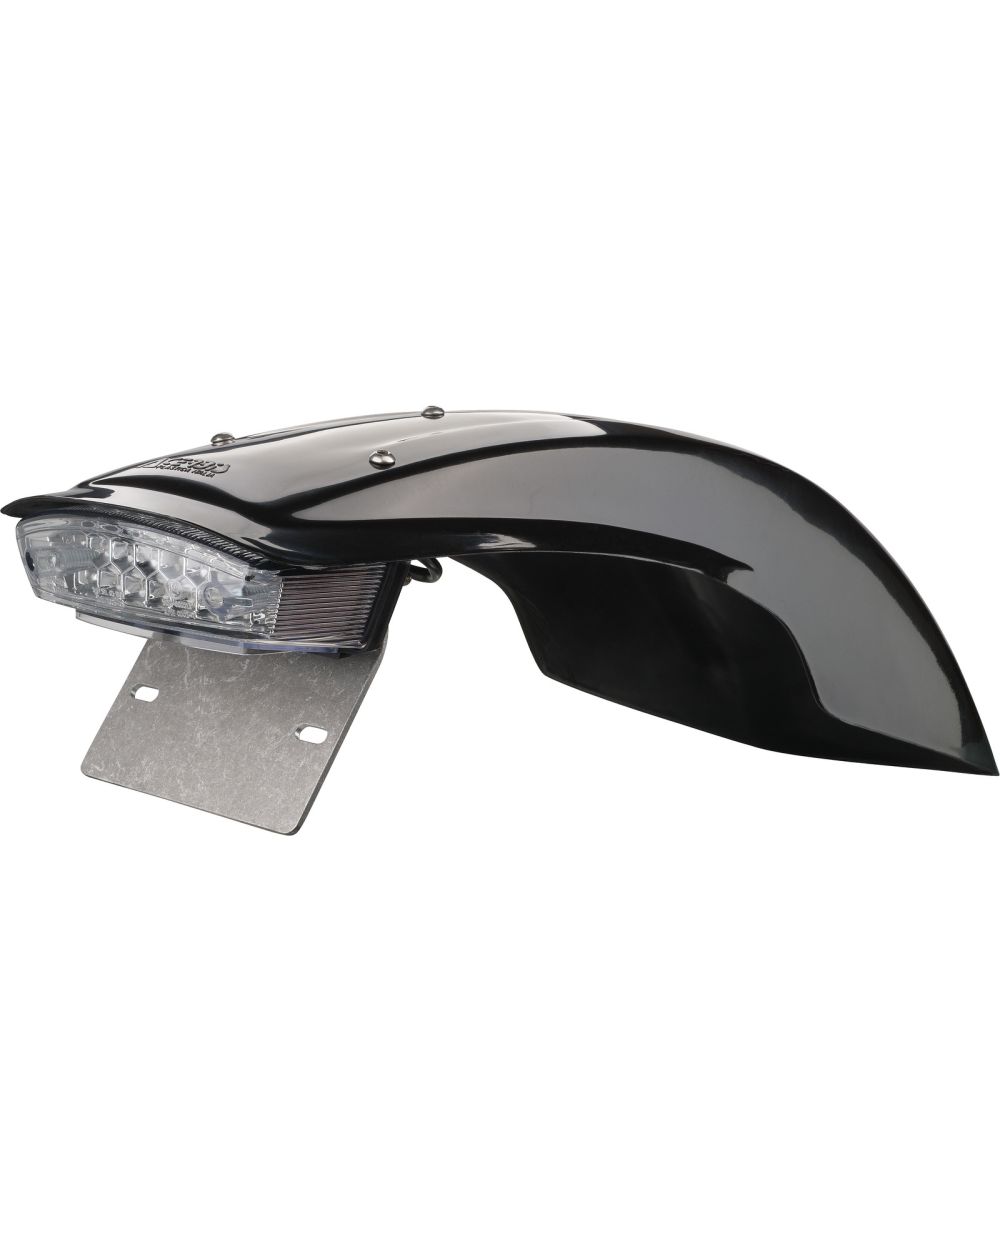 KEDO Hinterrad-Kotflügel schwarz inkl. transparentem LED-Rücklicht  (e-geprüft) und Kennzeichenträger